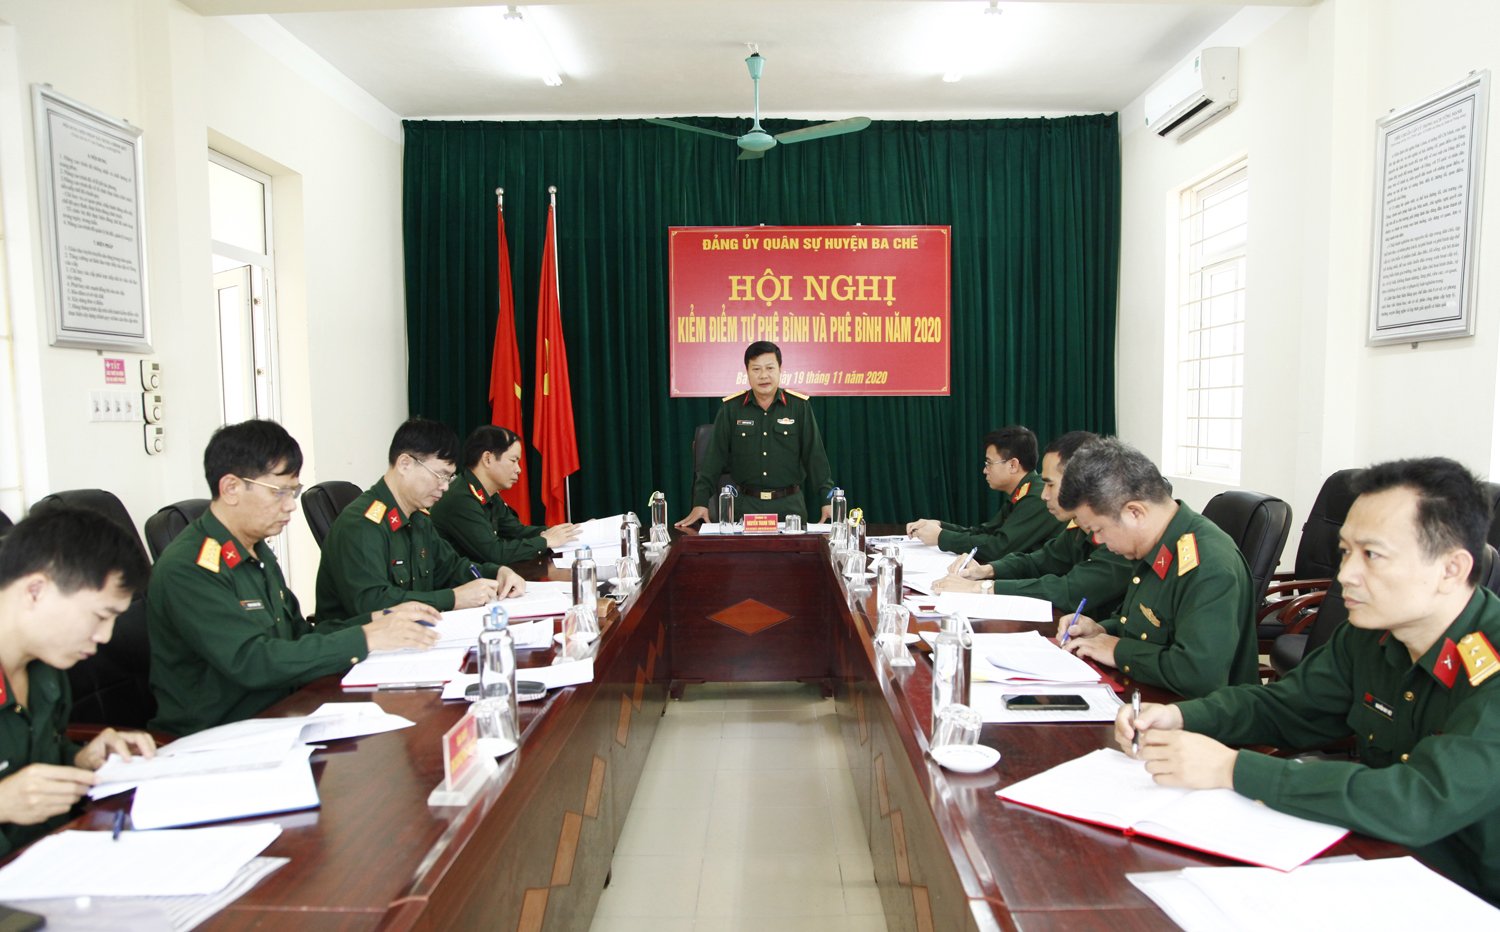 Hội nghị kiểm điểm tự phê bình và phê bình năm 2020 Đảng ủy Quân sự huyện Ba Chẽ, tỉnh Quảng Ninh